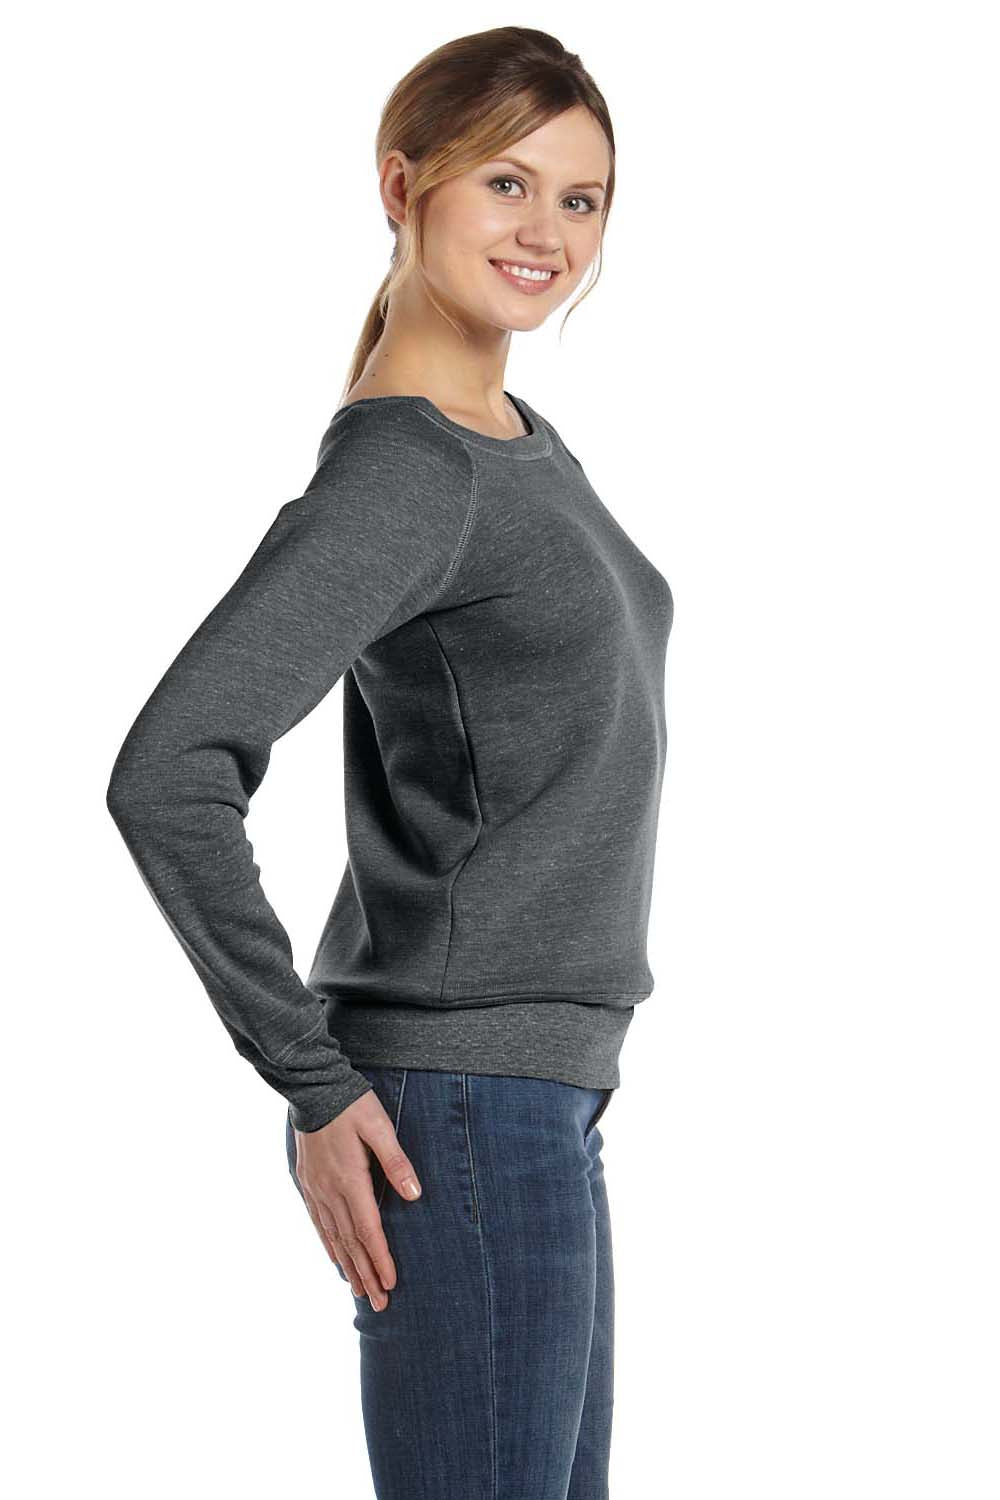 Bella + Canvas 7501 Womens Sponge Fleece Wide Neck Sweatshirt Solid Black Model Side